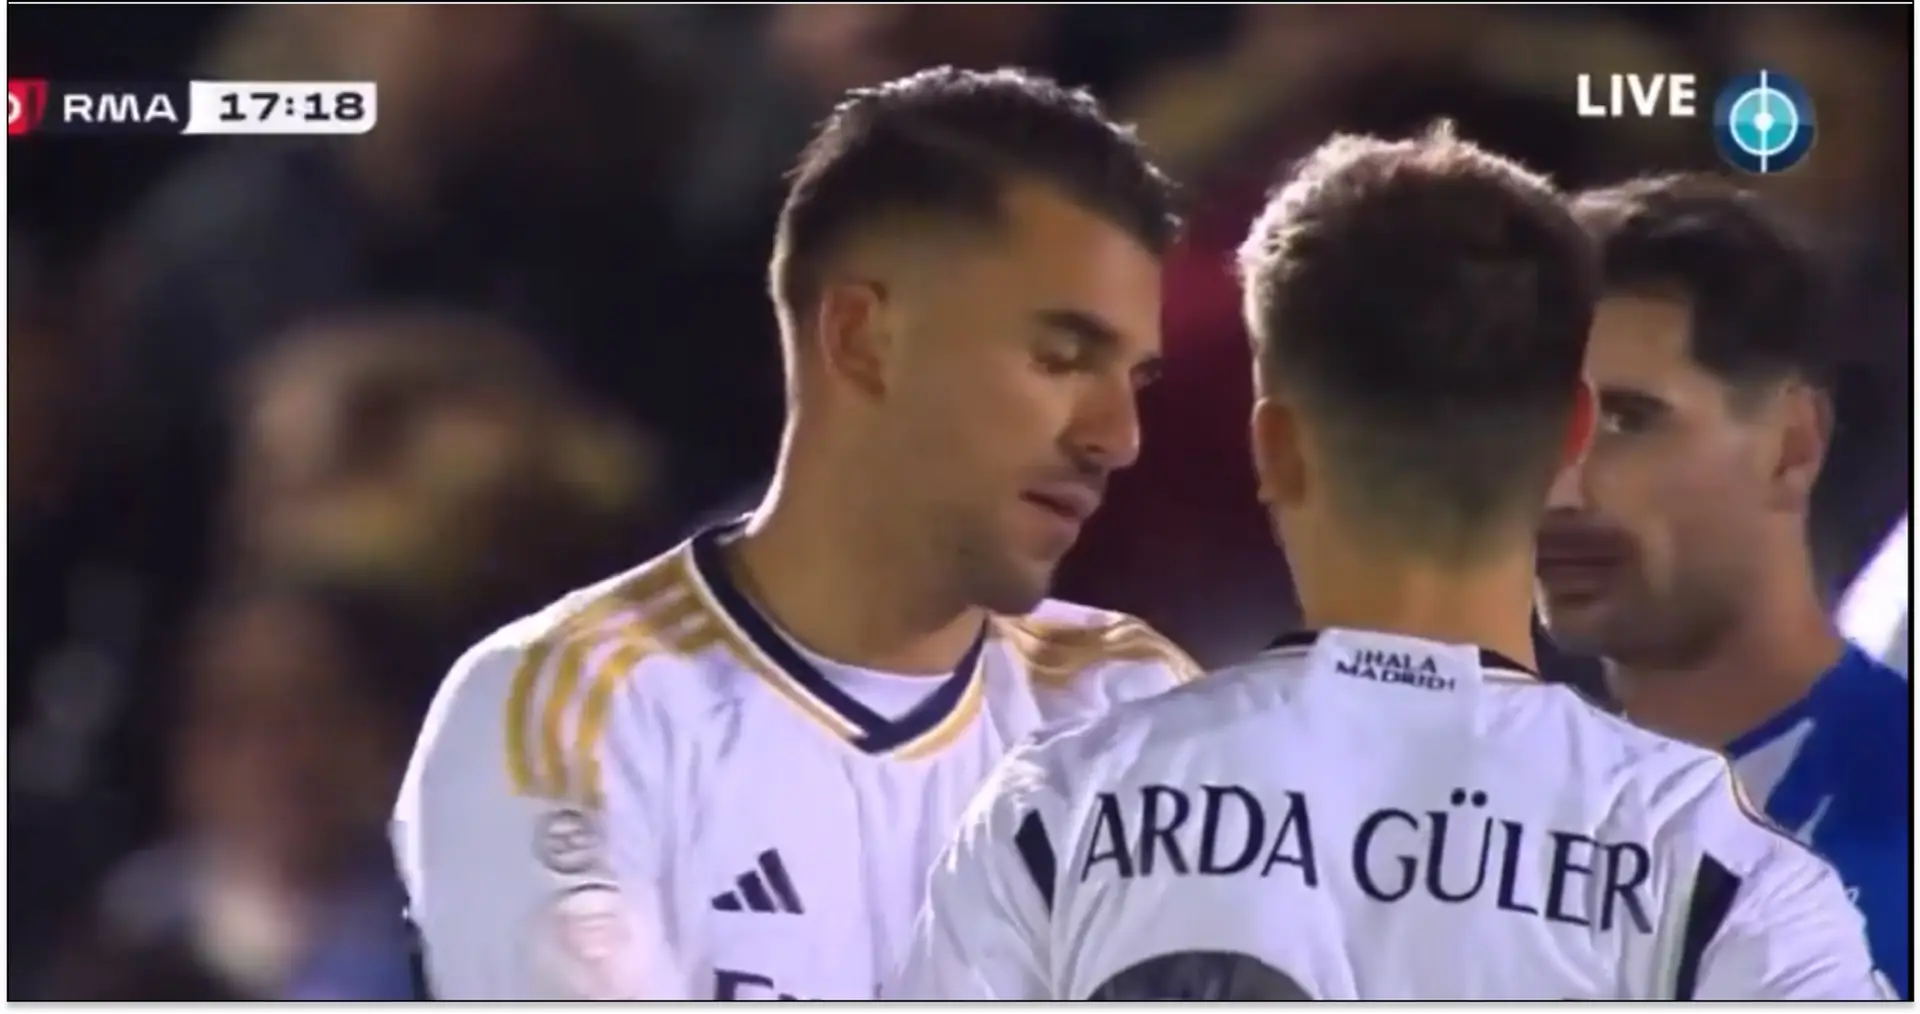 "Dani est un joueur senior": un Madridista défend Ceballos suite à l'incident du coup franc avec Guler